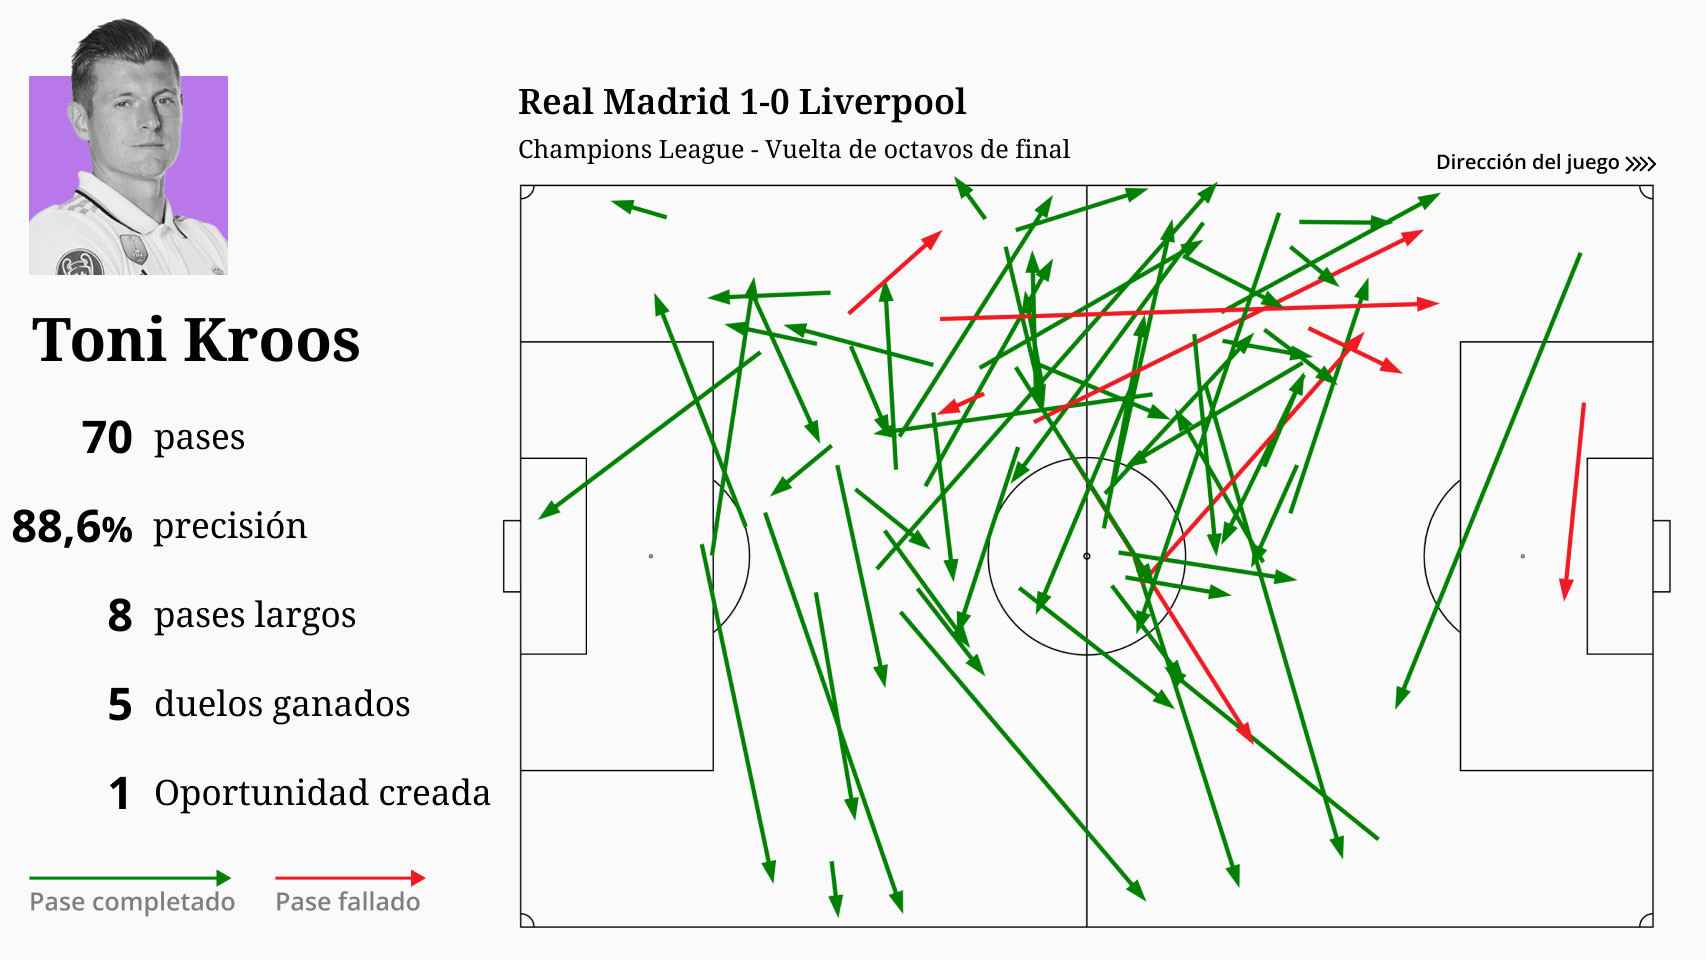 Las estadísticas de Kroos en el Real Madrid 1-0 Liverpool